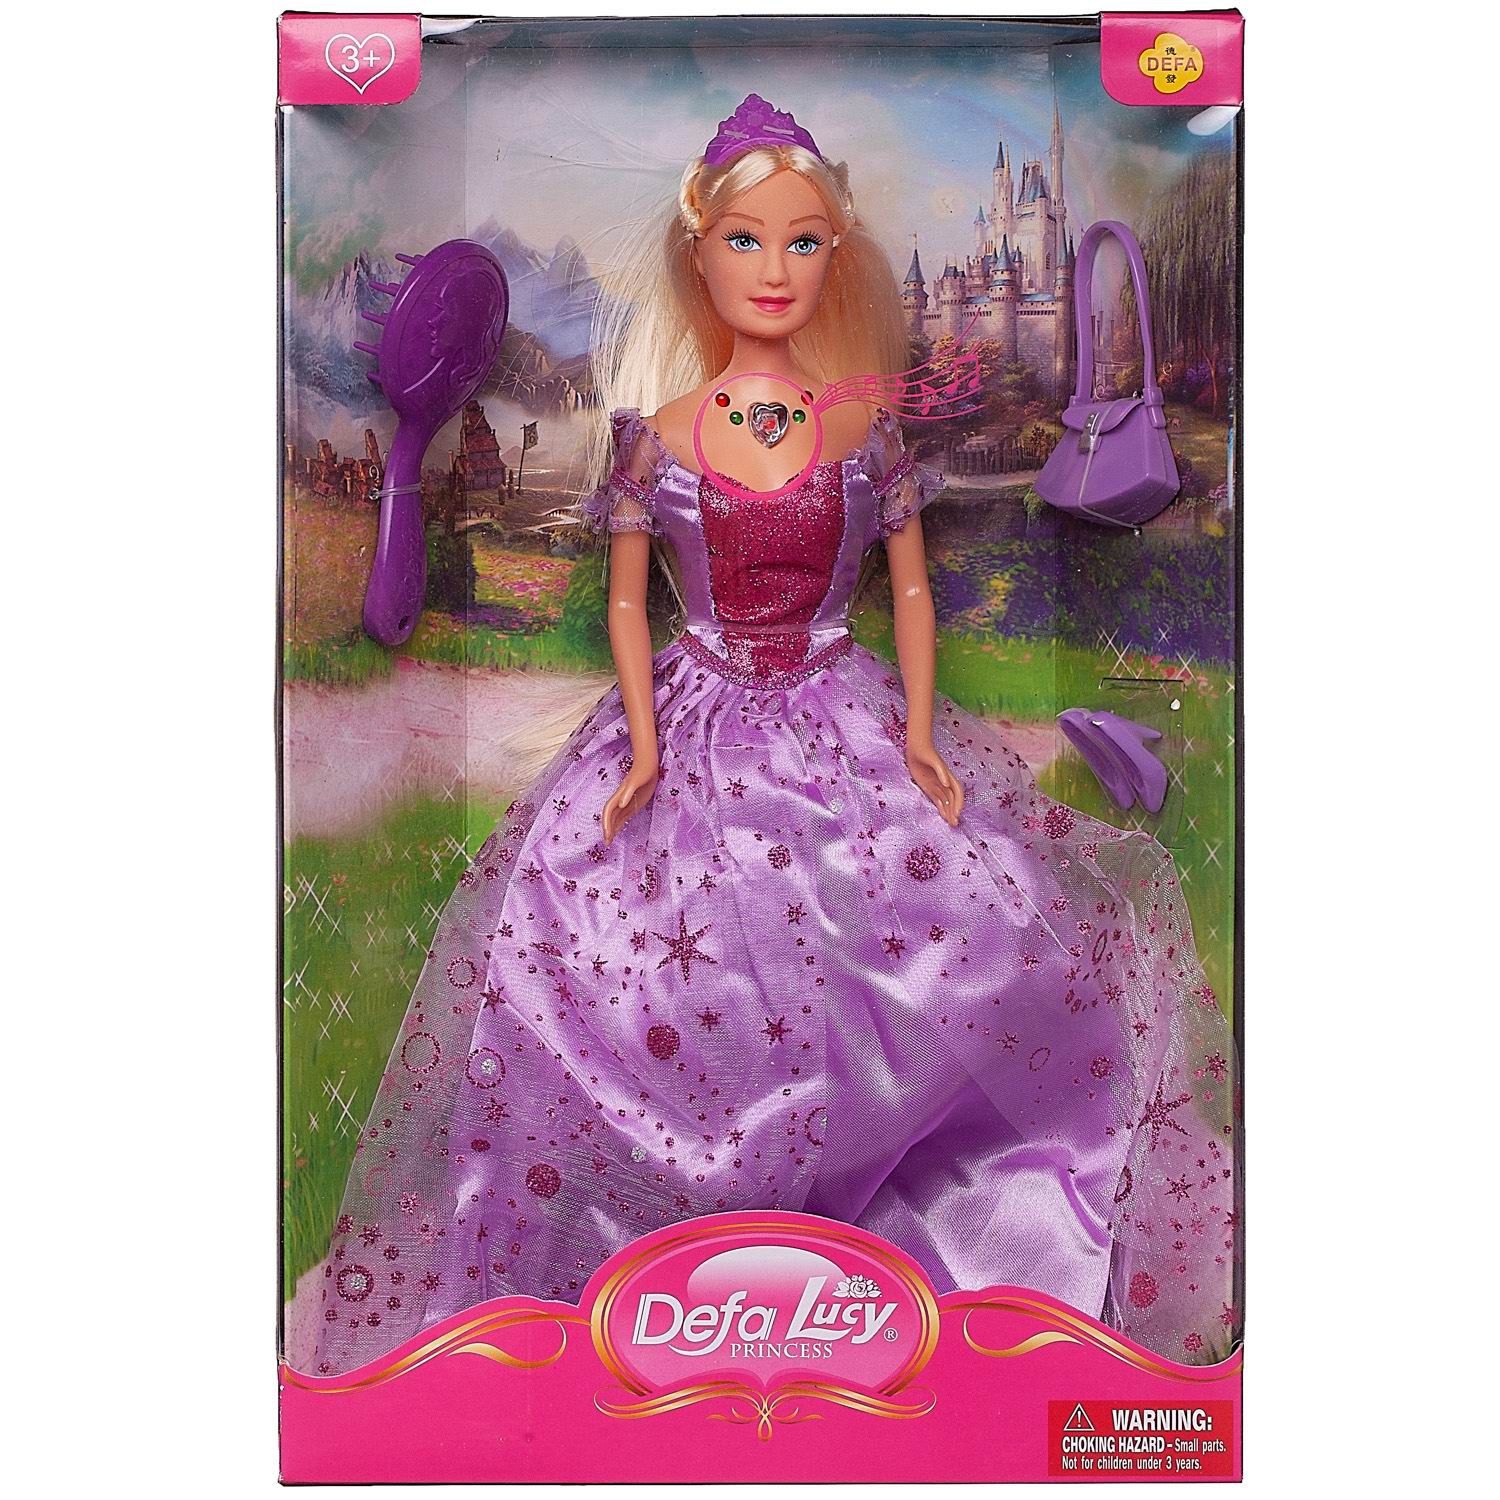 Кукла Defa Lucy Принцесса в фиолетовом платье в наборе с игровыми предметами, 29 см кукла в наборе с аксессуарами римские каникулы 29 см mia 200669824 2